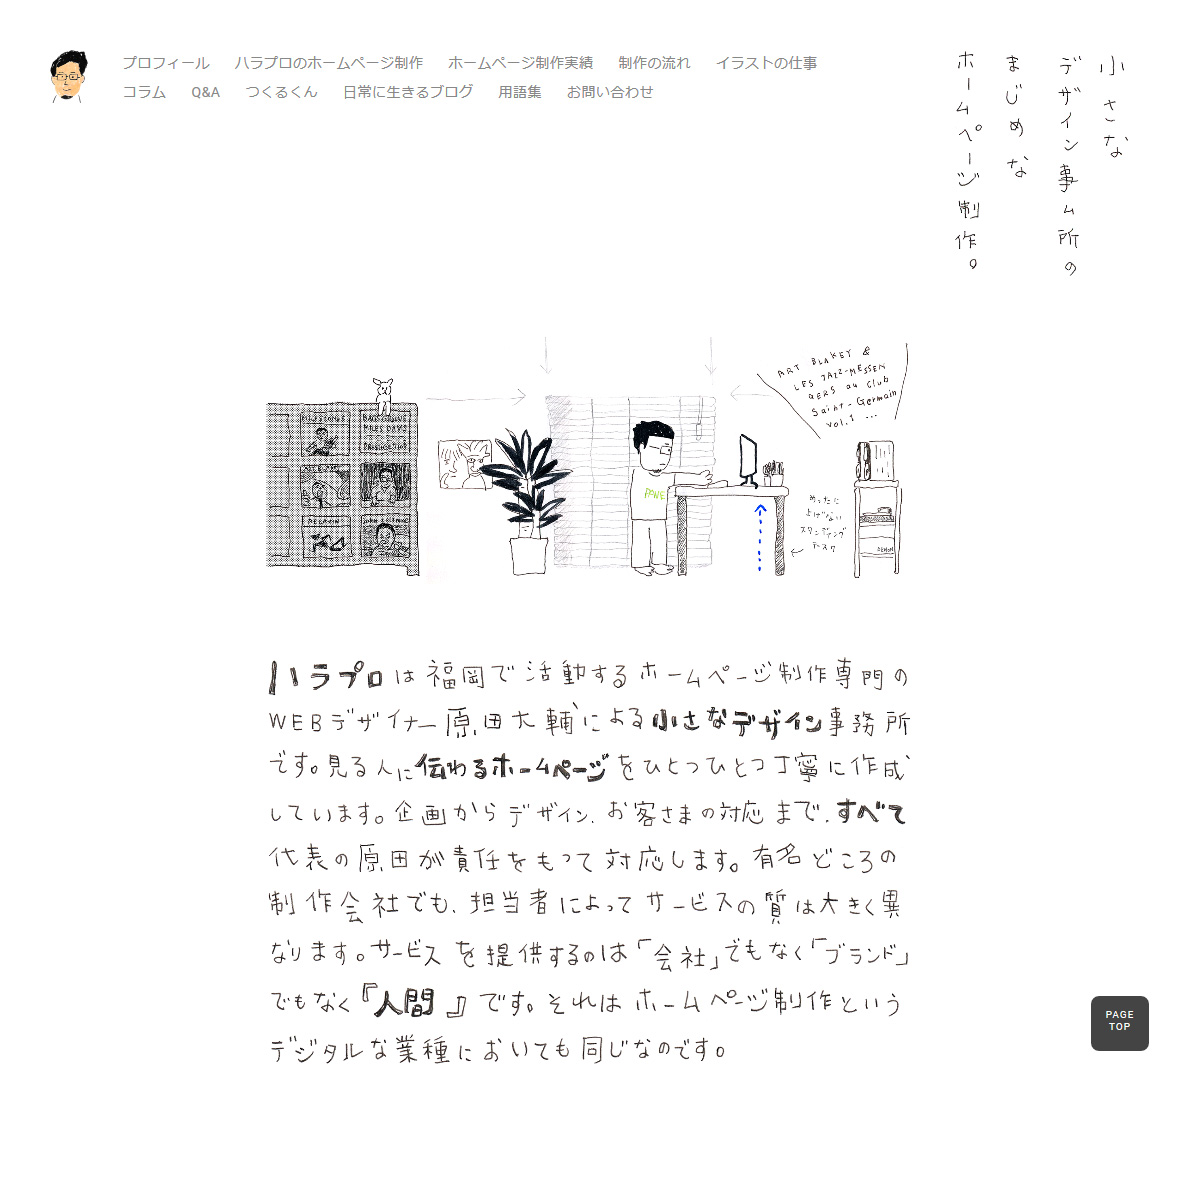 福岡のホームページ制作 ハラプロはまじめで小さなwebデザイン事務所です